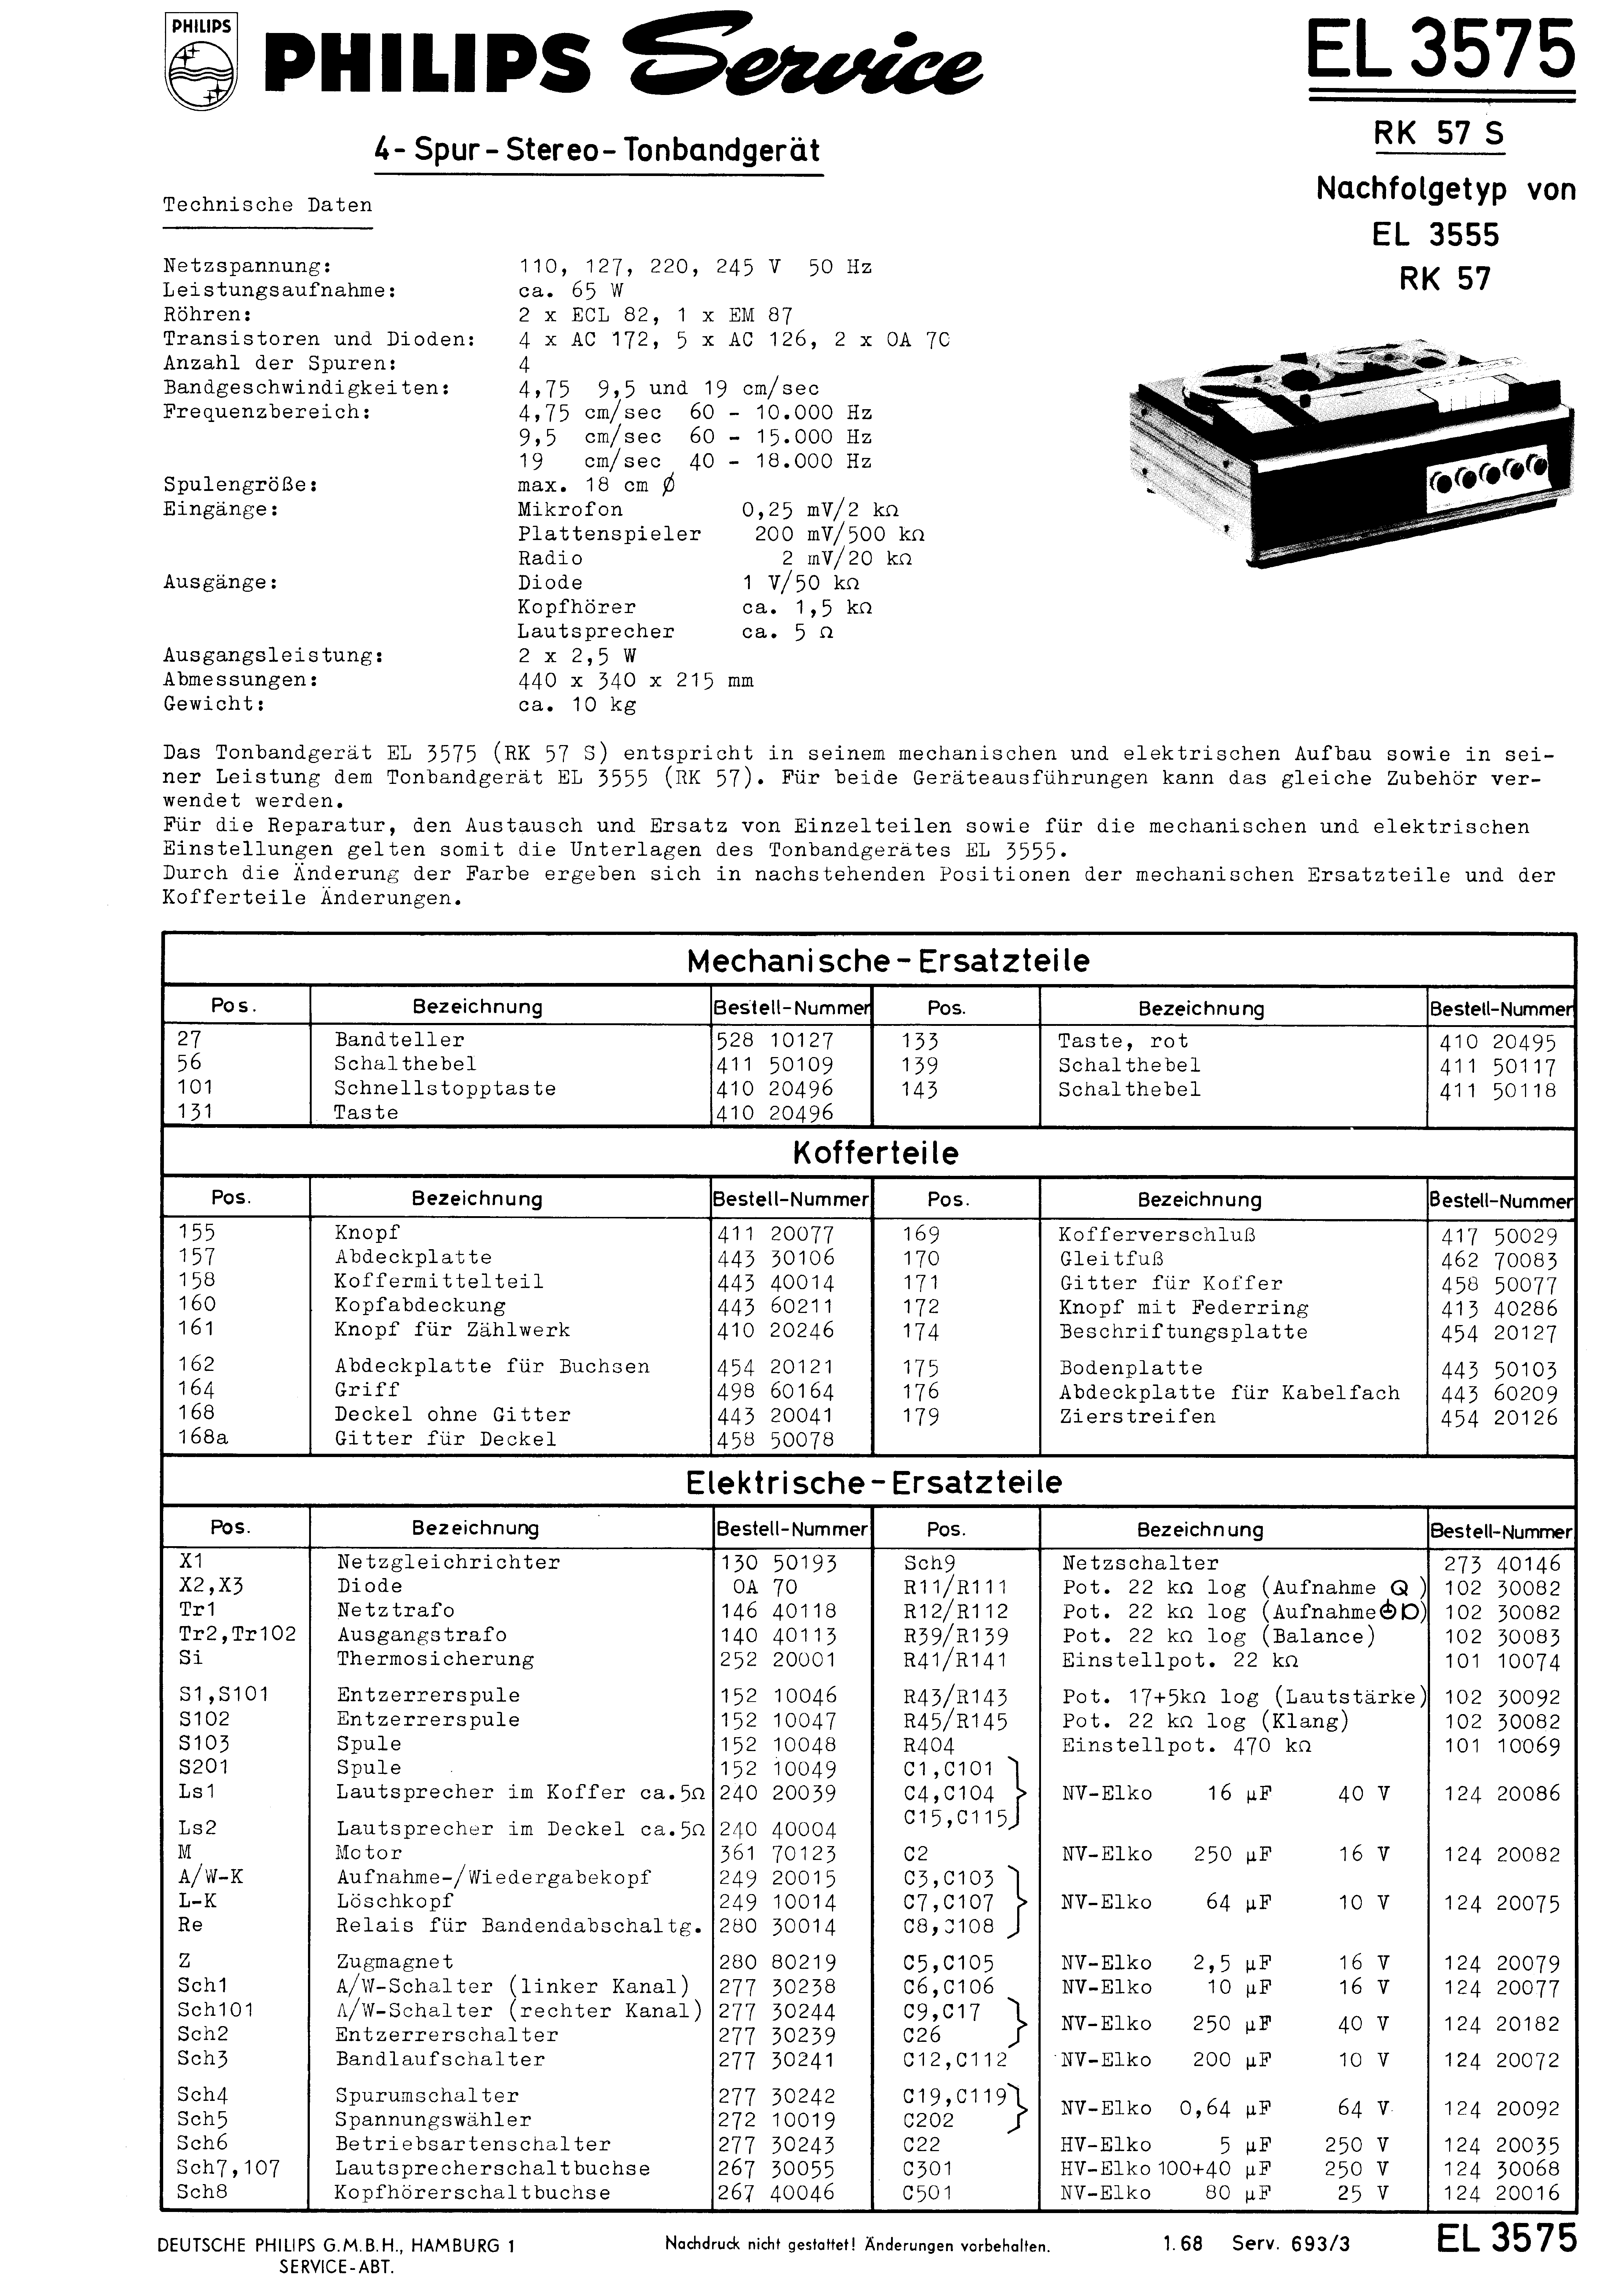 PHILIPS EL 3575 SM service manual (1st page)